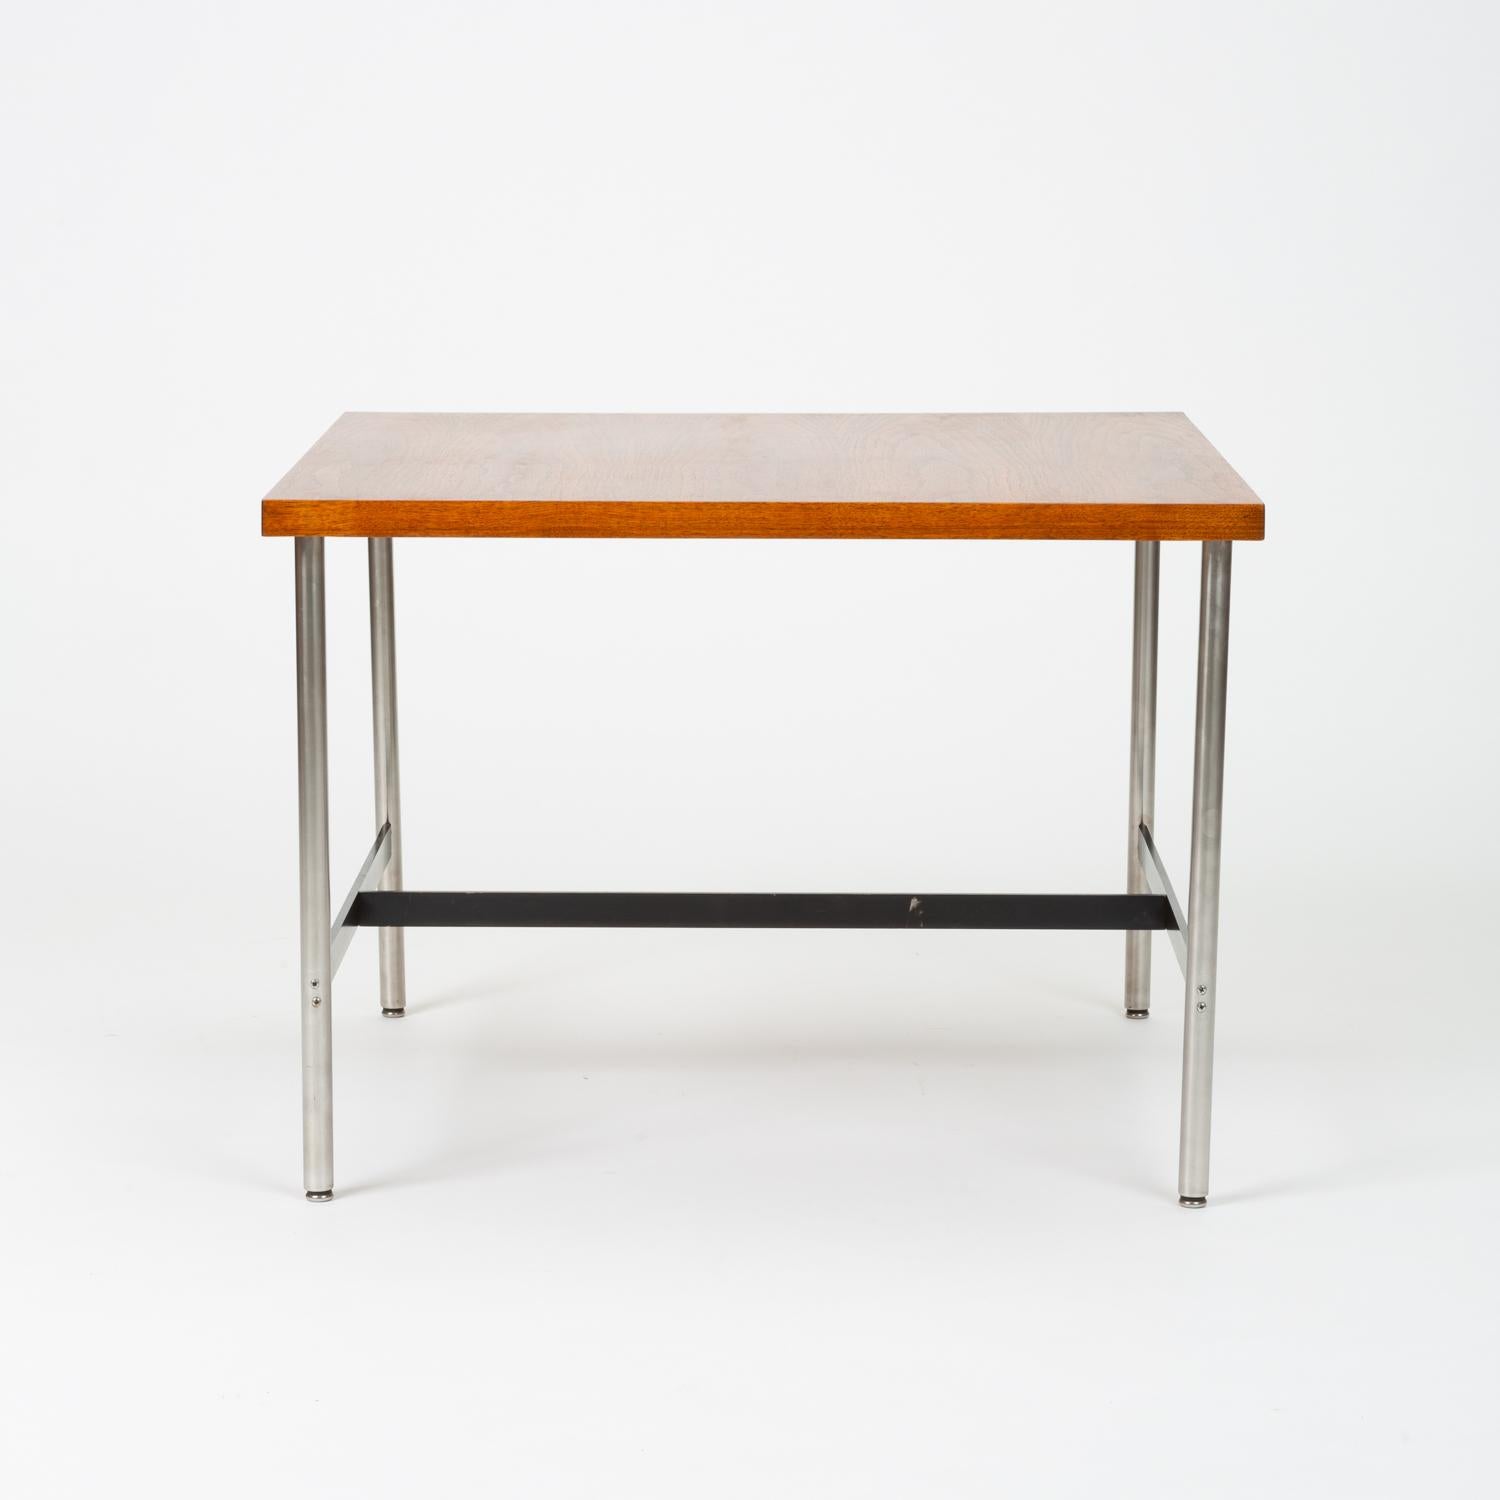 Une table d'enfant moderniste de Herman Miller avec un plateau carré et un cadre métallique. Quatre pieds ronds en acier brossé avec des patins en acier sont légèrement en retrait des coins du plan de travail. Un support métallique en forme de I, en